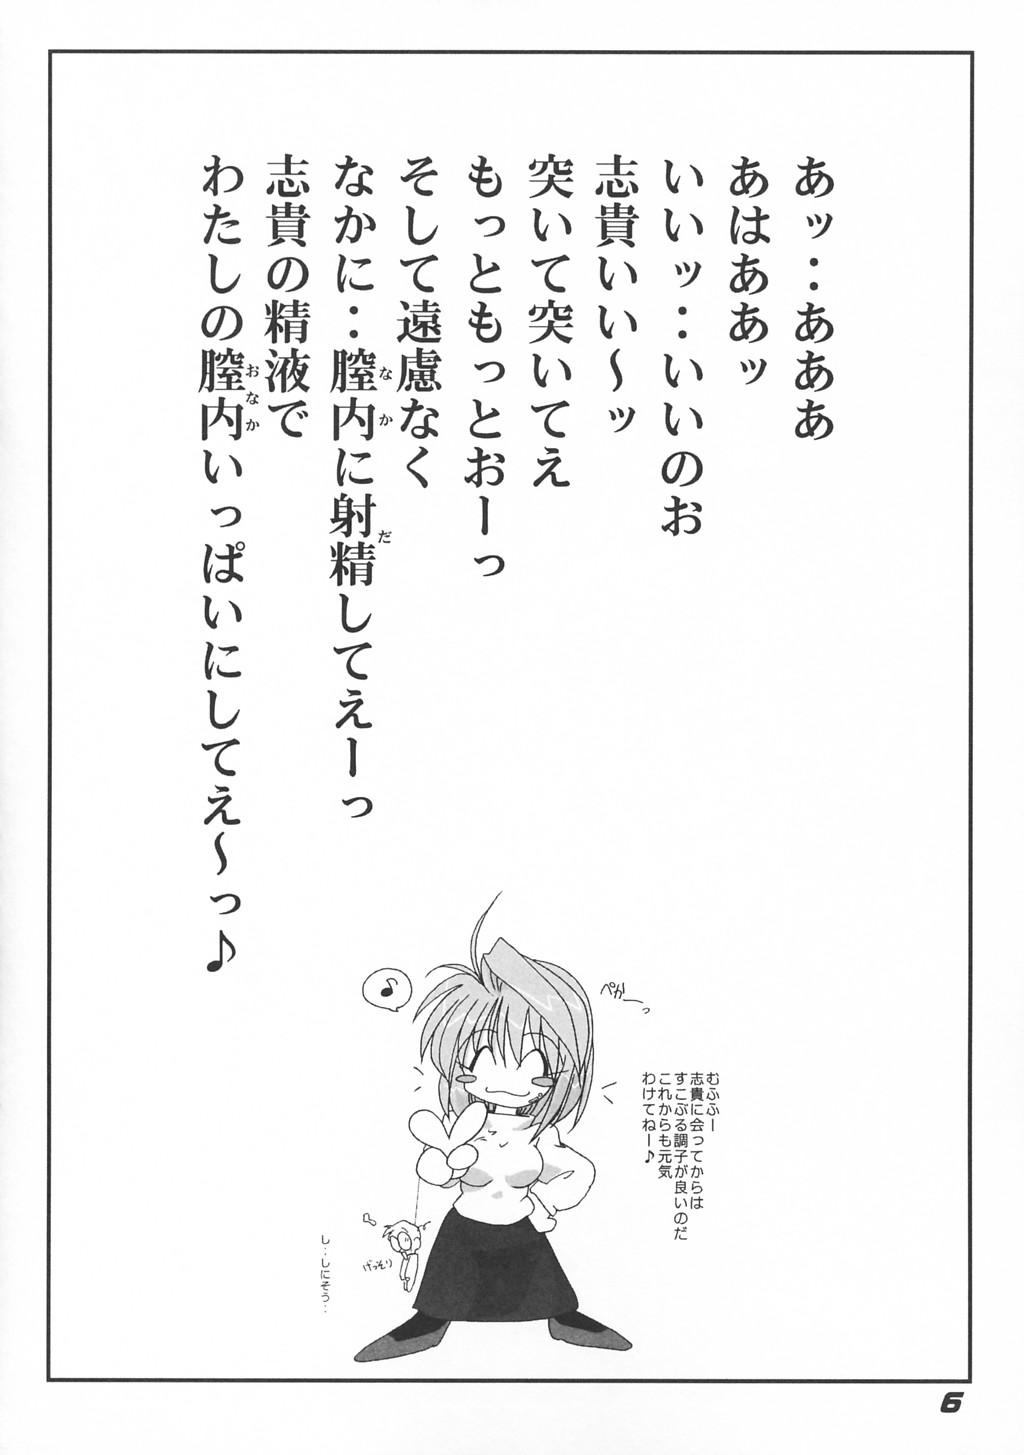 Affair [Kieiza cmp] N+ [N-Plus] #7 (Tsukihime) - Tsukihime Lima - Page 7